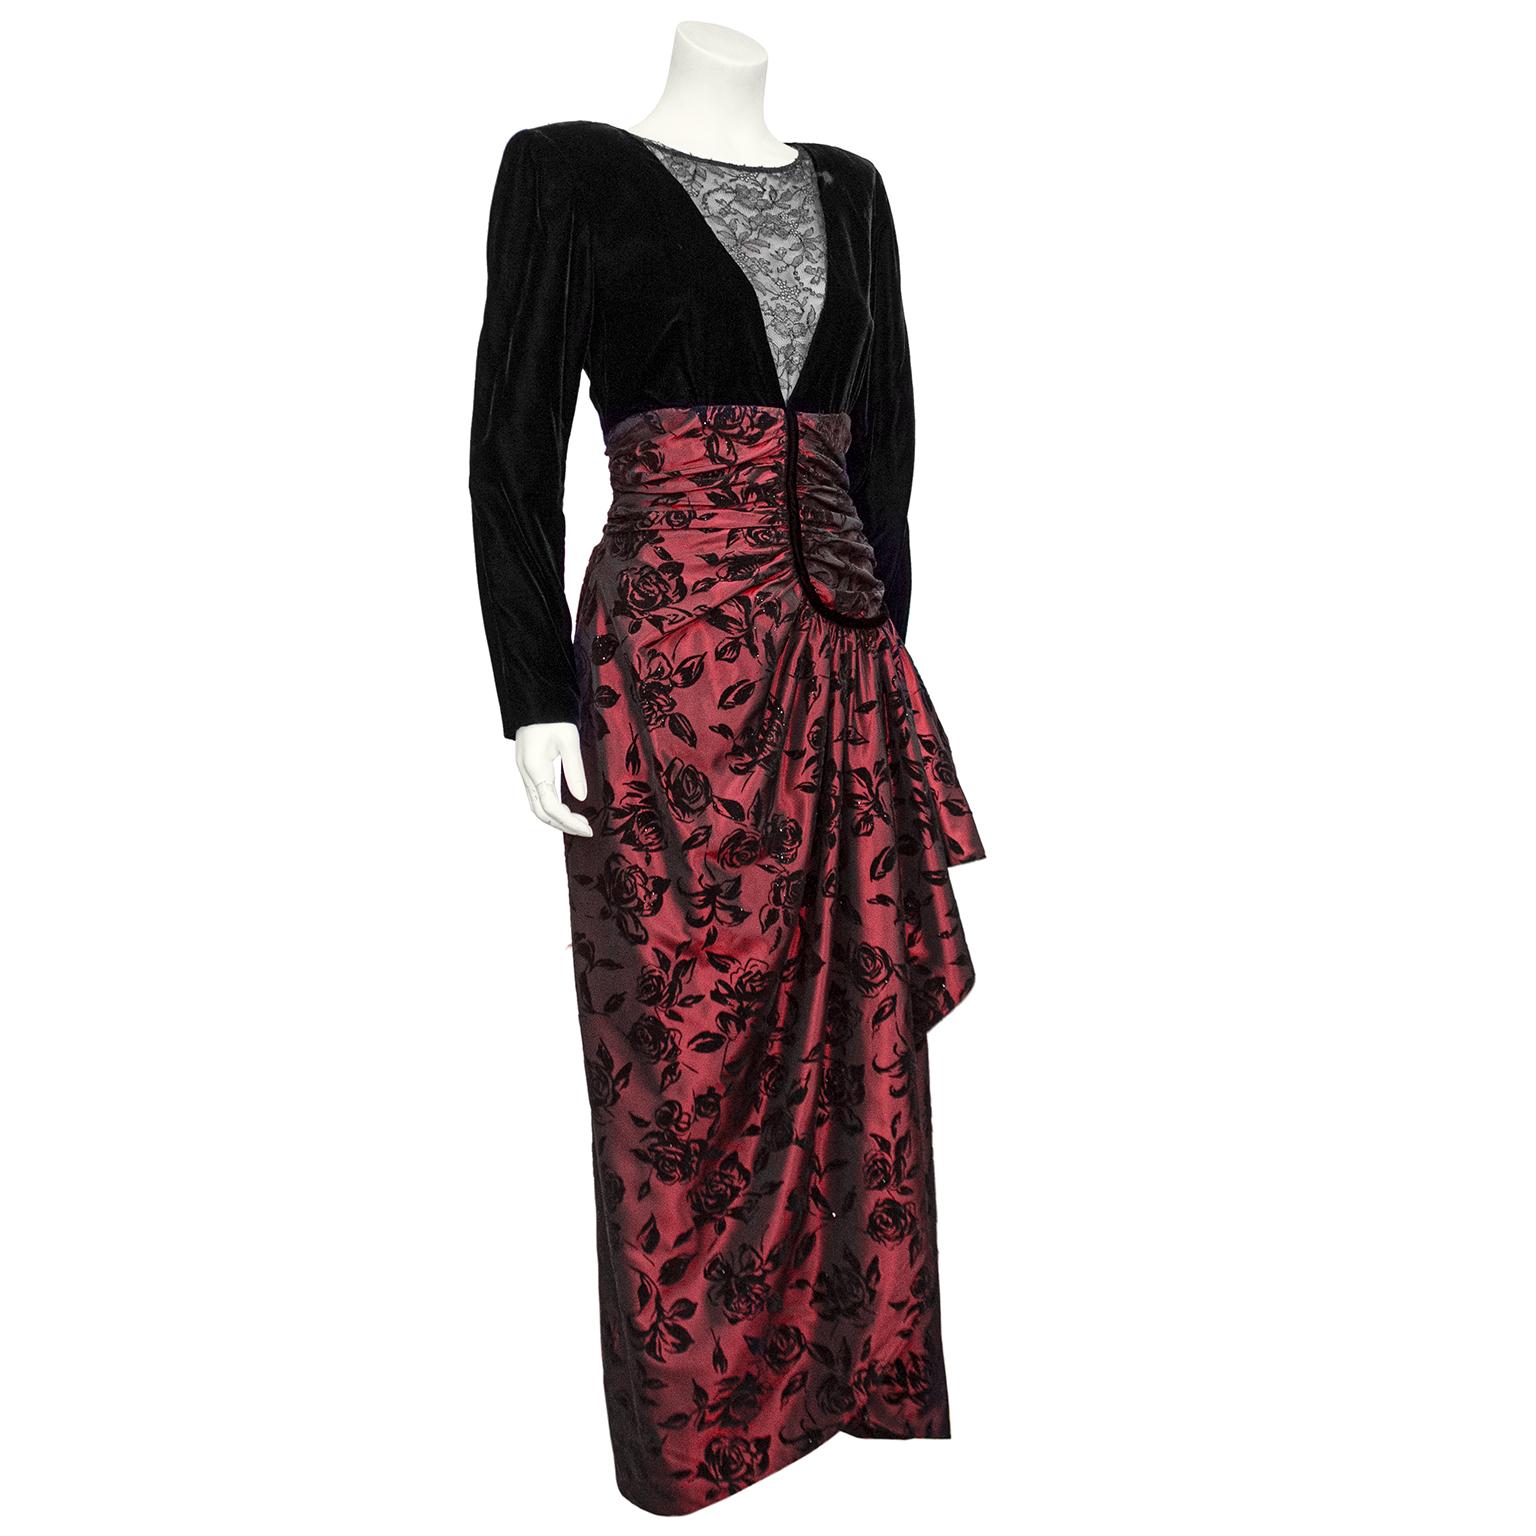 Überragend schönes Kleid von Nina Ricci aus den 1980er Jahren. Das Oberteil ist aus schwarzem Samt geschnitten, mit Raffungen an den gepolsterten Schultern und einem tiefen V-Ausschnitt, der mit eleganter schwarzer Spitze besetzt ist. Der Rock aus